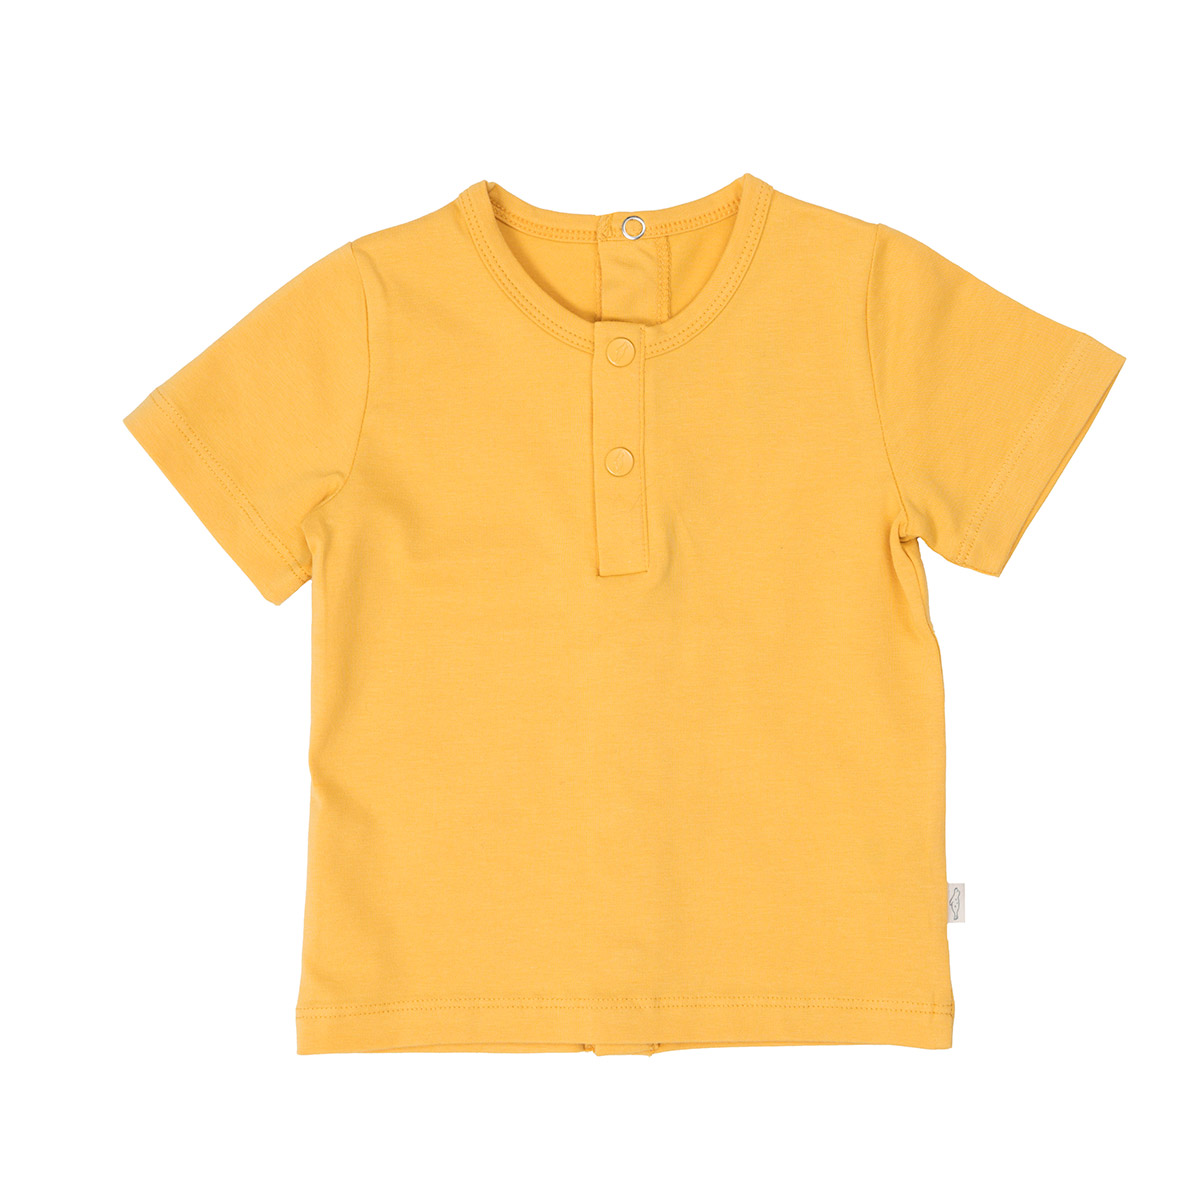 Sarı Kısa Kollu Çıtçıtlı Bebek Tişört